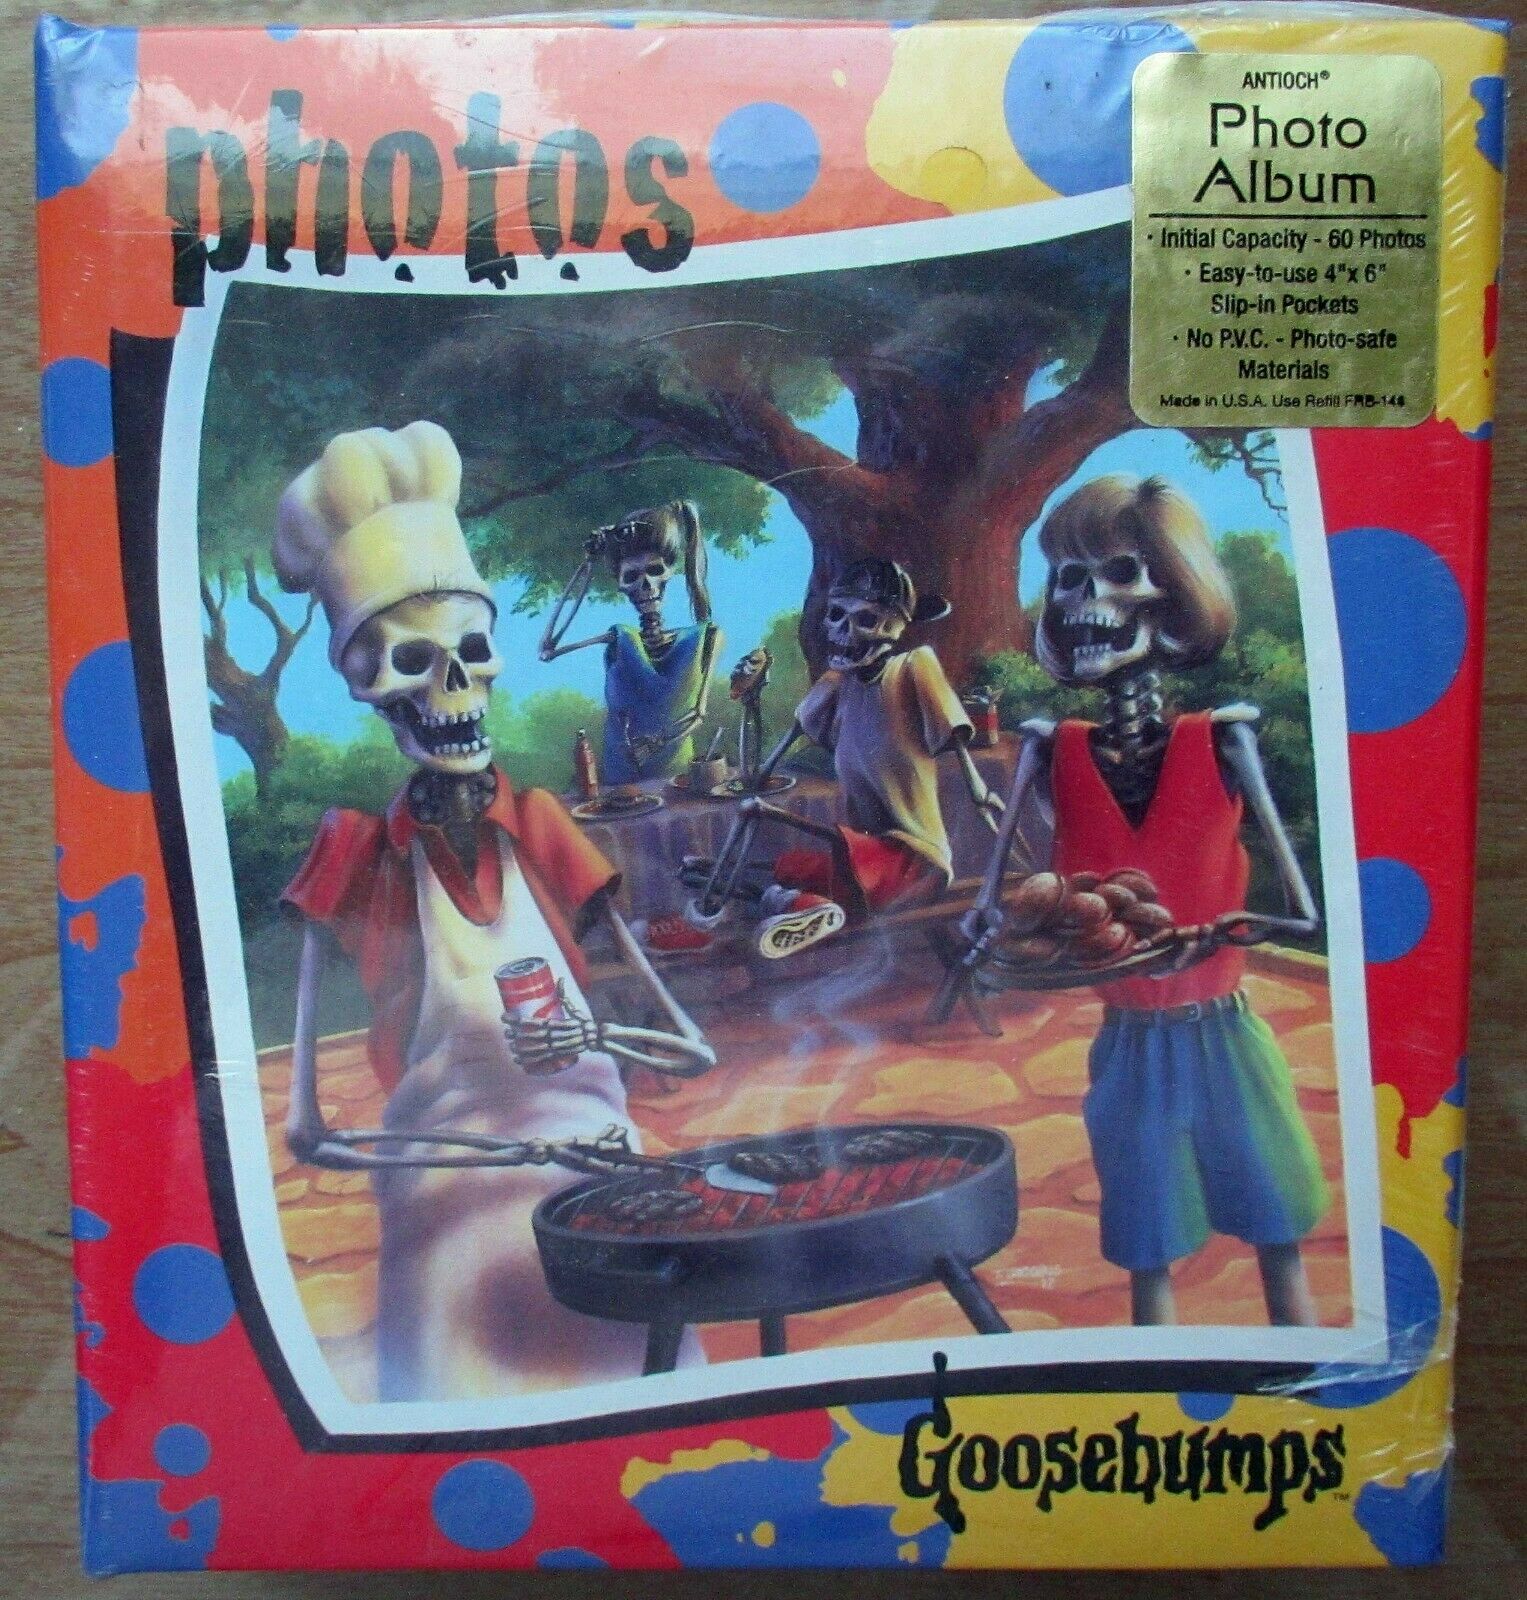 1990s Vintage Goosebumps Photo Album (60 Photos) + 30 Postcard Book (edition 1)